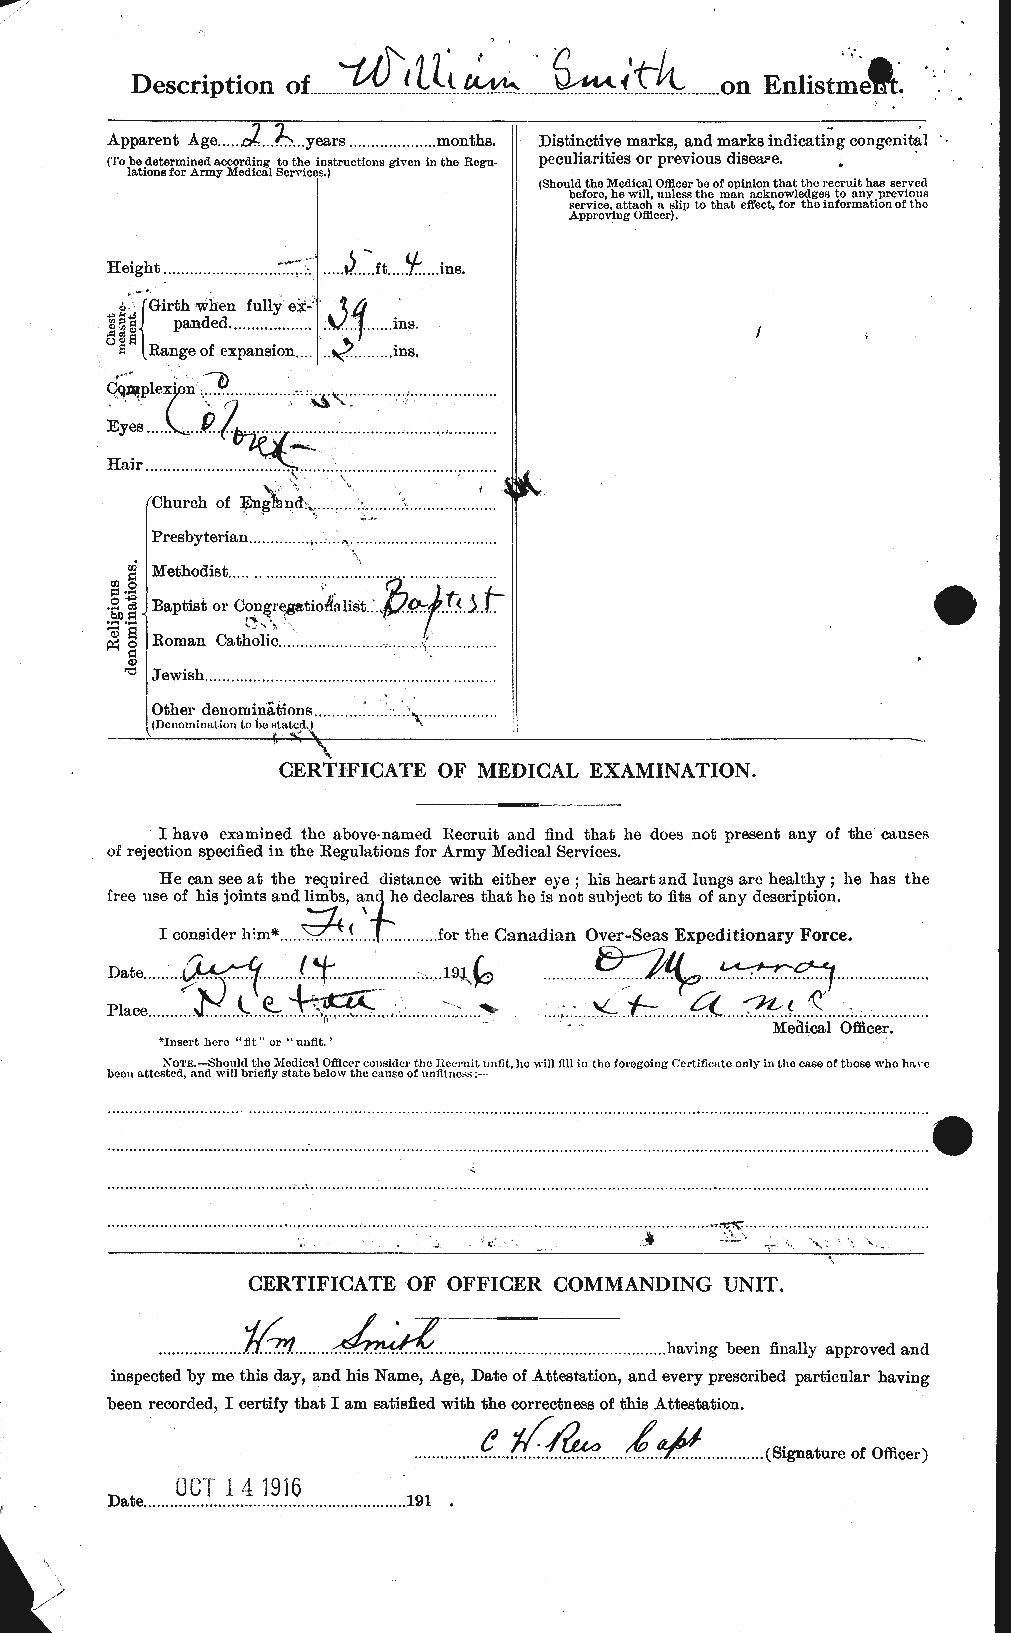 Dossiers du Personnel de la Première Guerre mondiale - CEC 111332b